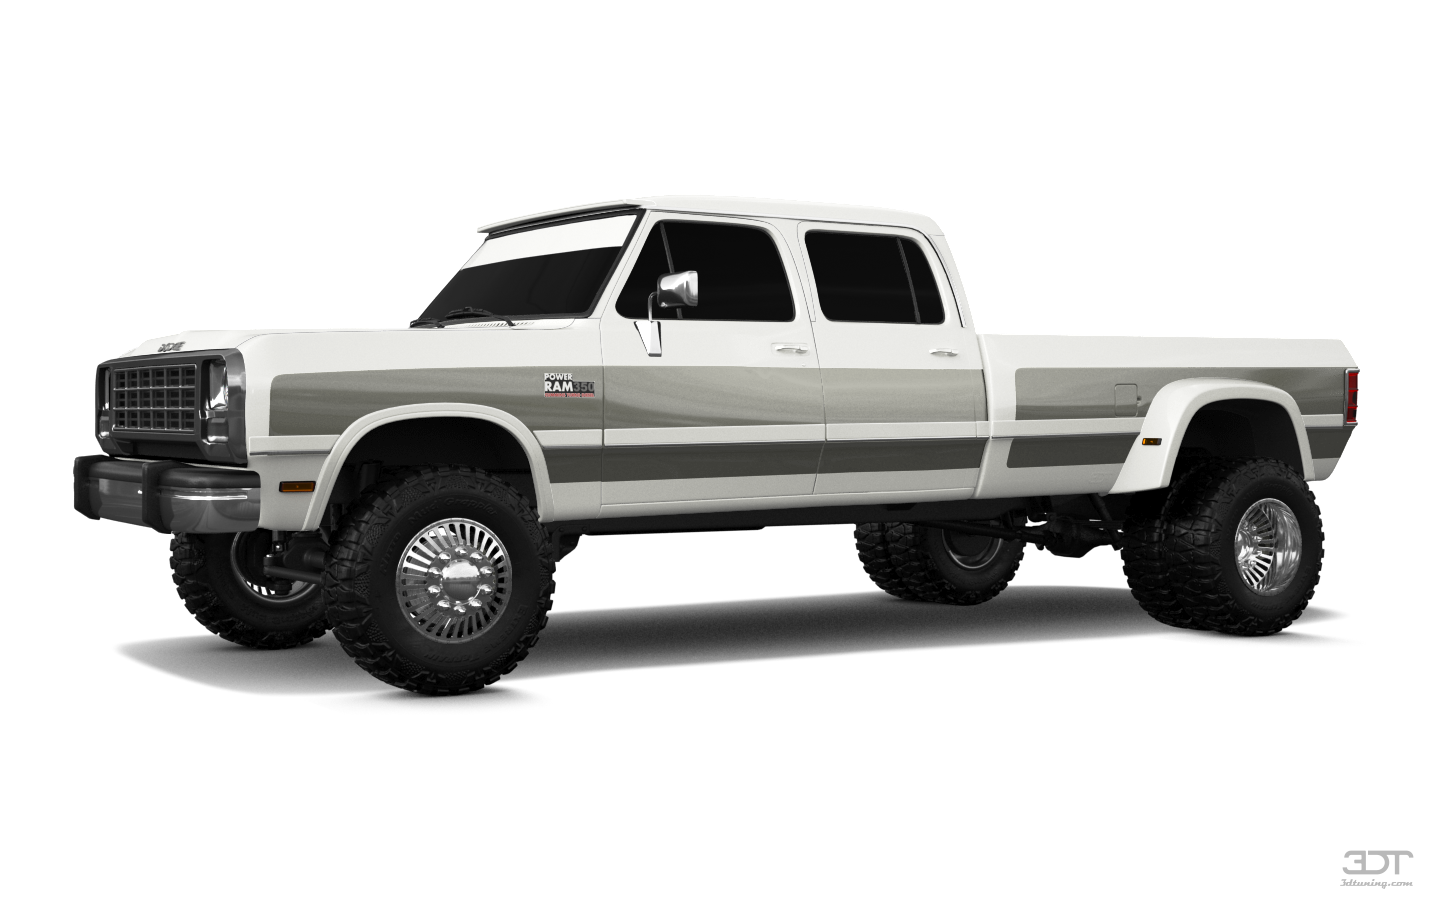 Dodge Ram 350 4 Door pickup truck 1991